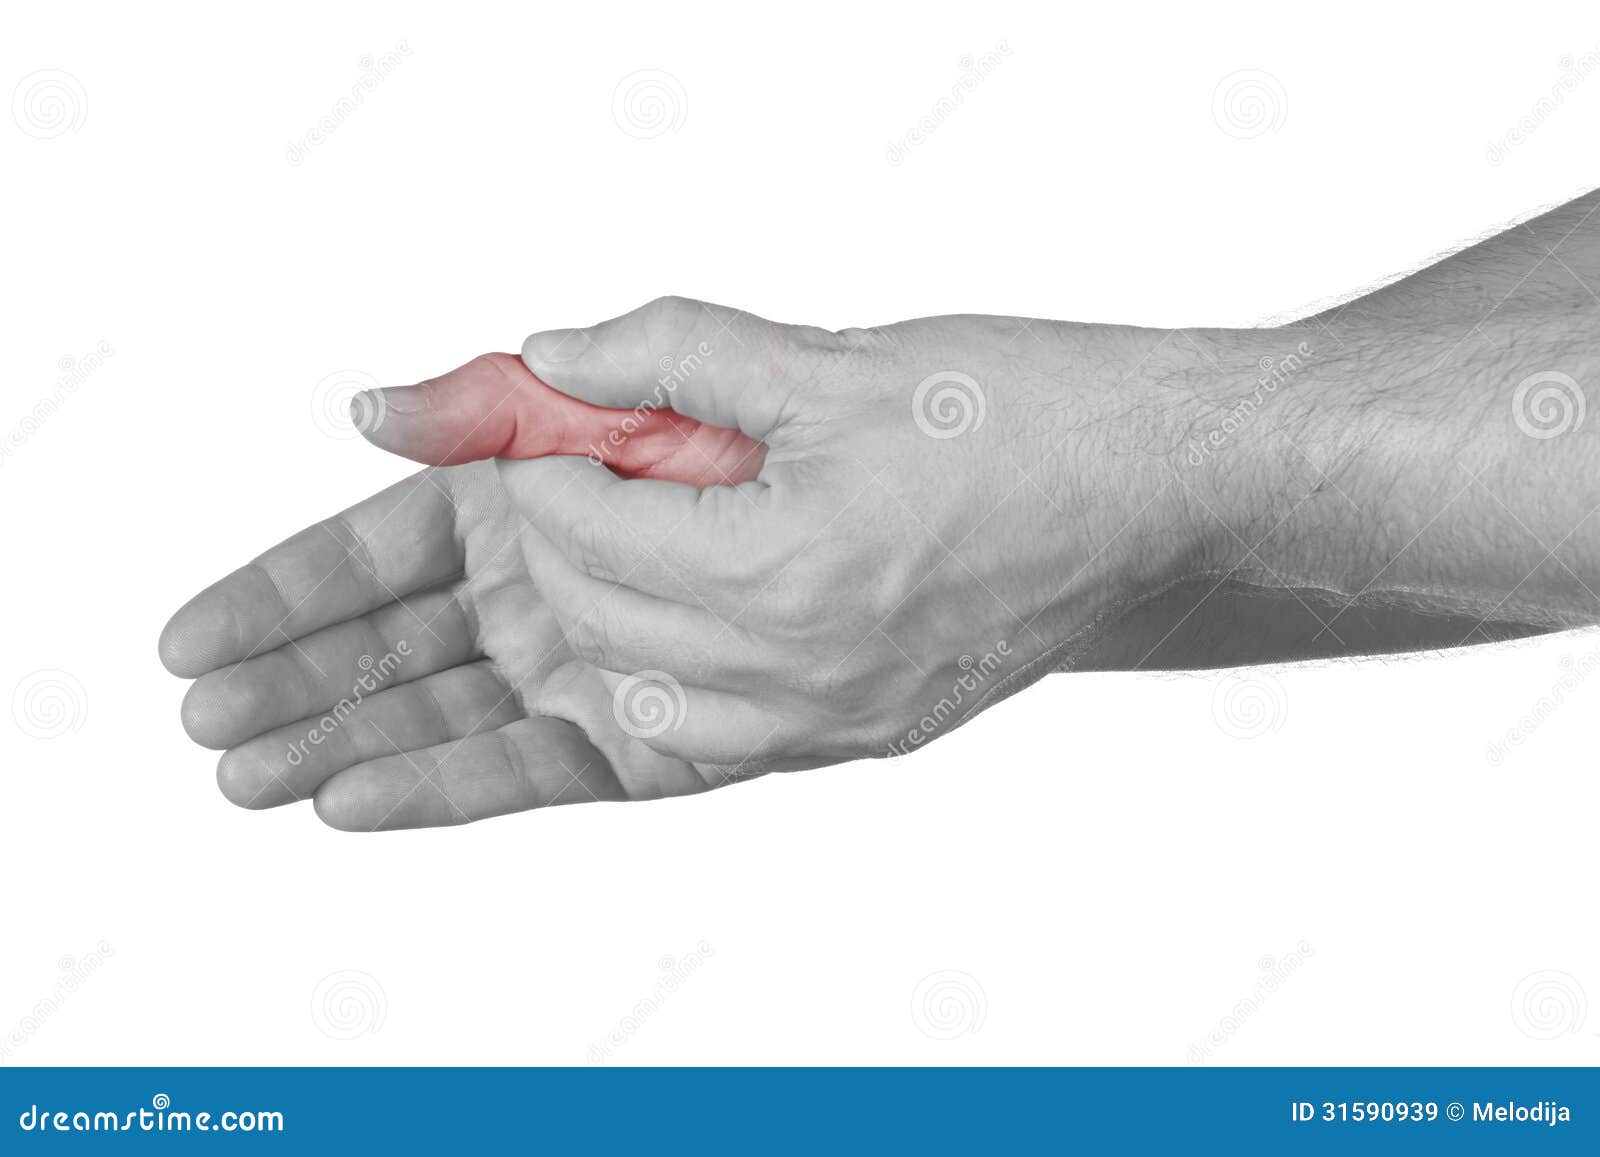 Болит под большим пальцем руки. Сустав большого пальца руки. Боль в суставе большого пальца руки. Болит сустав большого пальца на руке. Болит сустав Болшево пальца на руке.